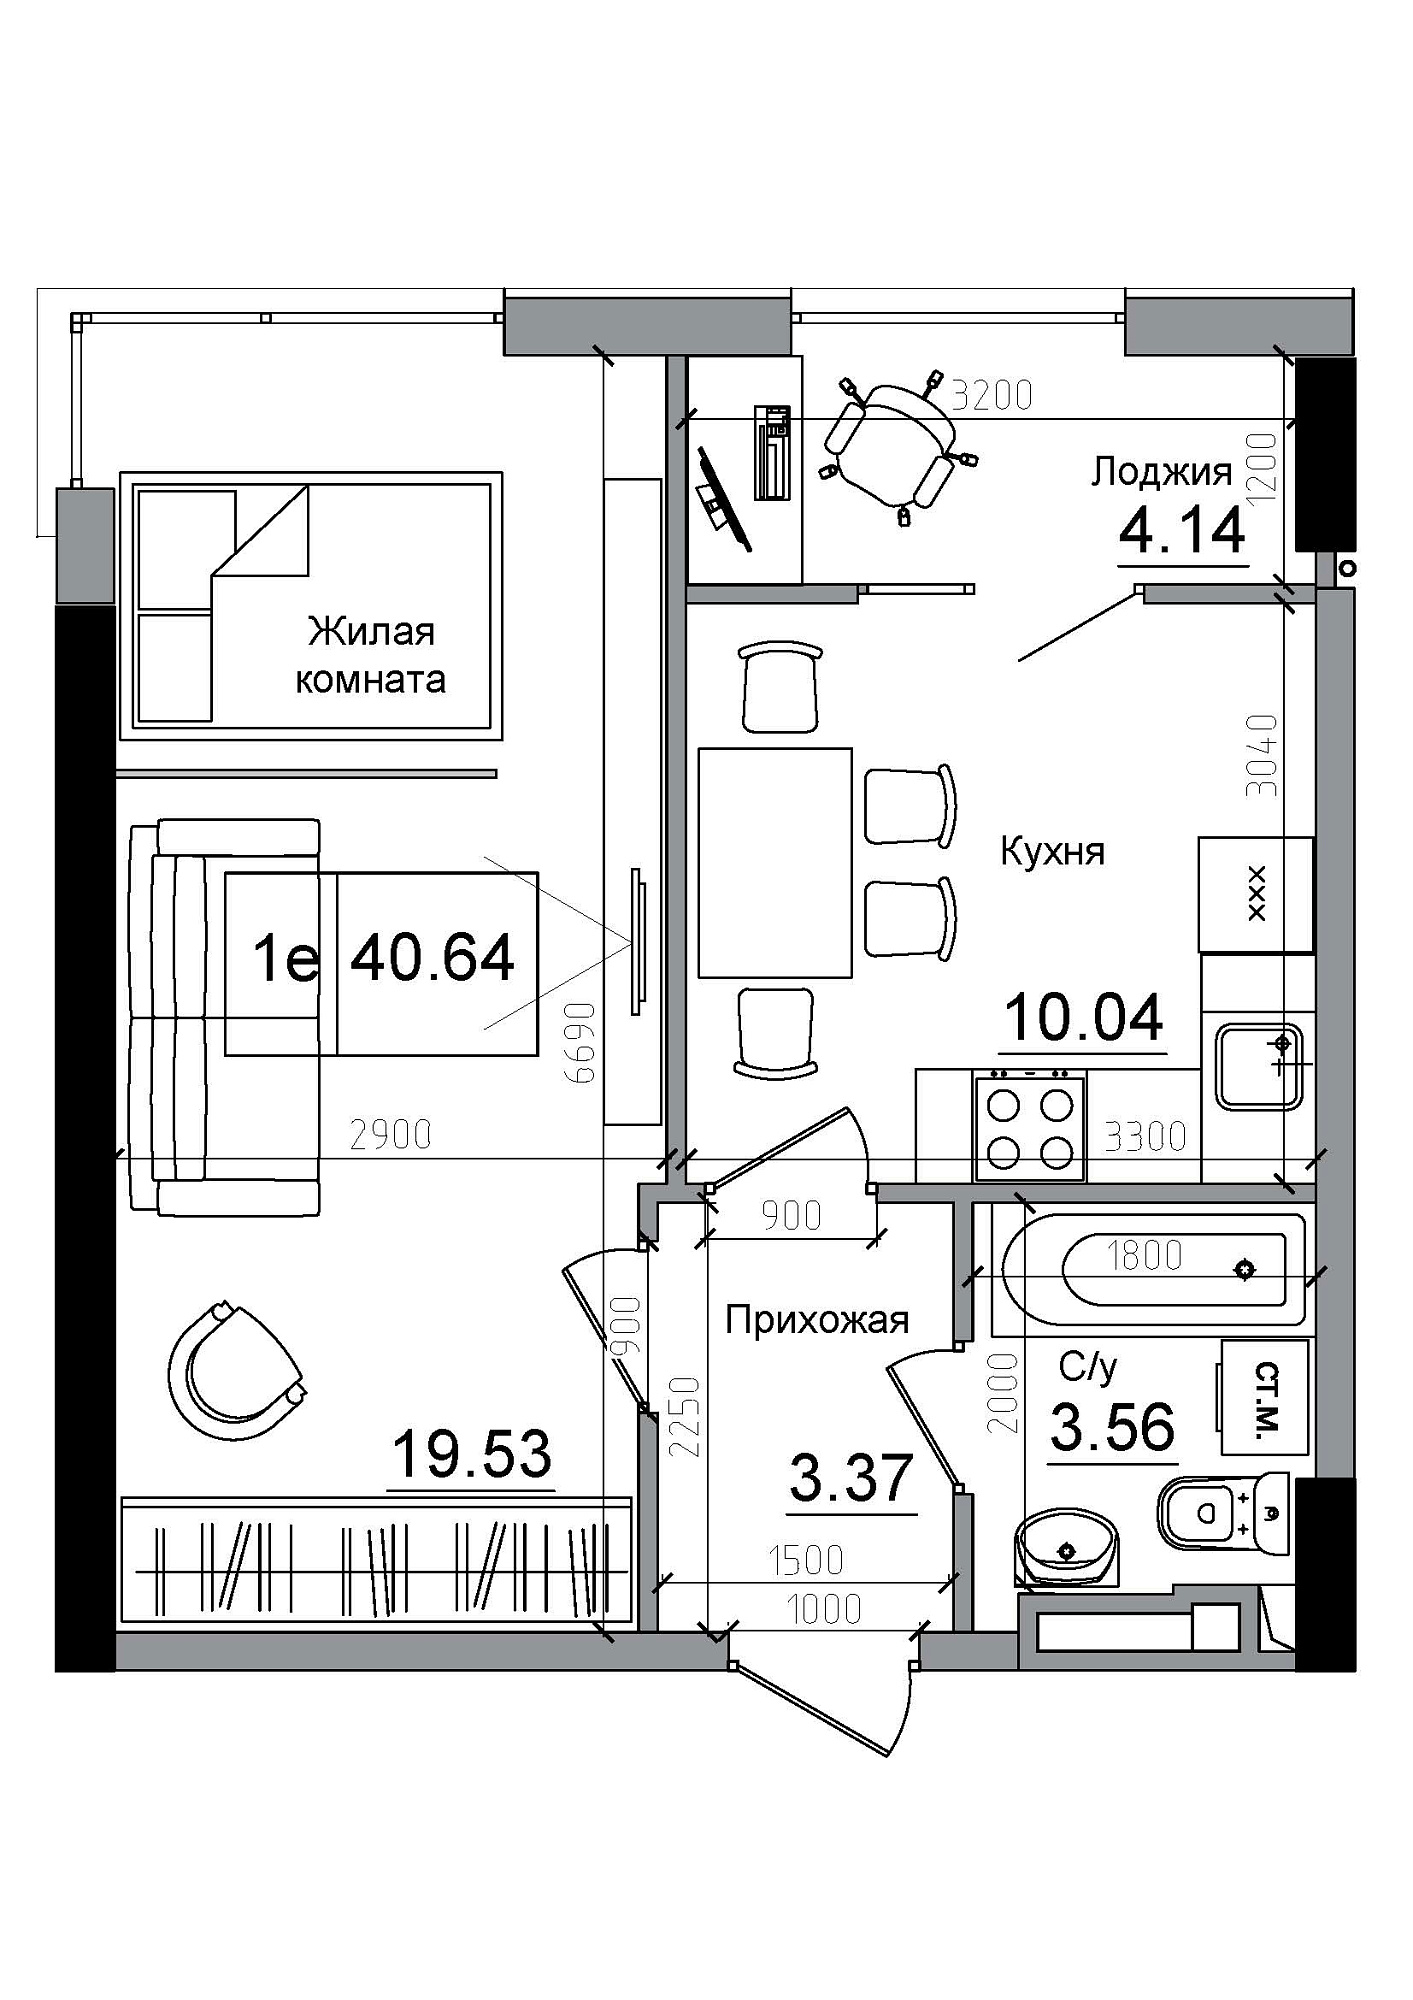 Планування 1-к квартира площею 40.64м2, AB-12-05/00006.